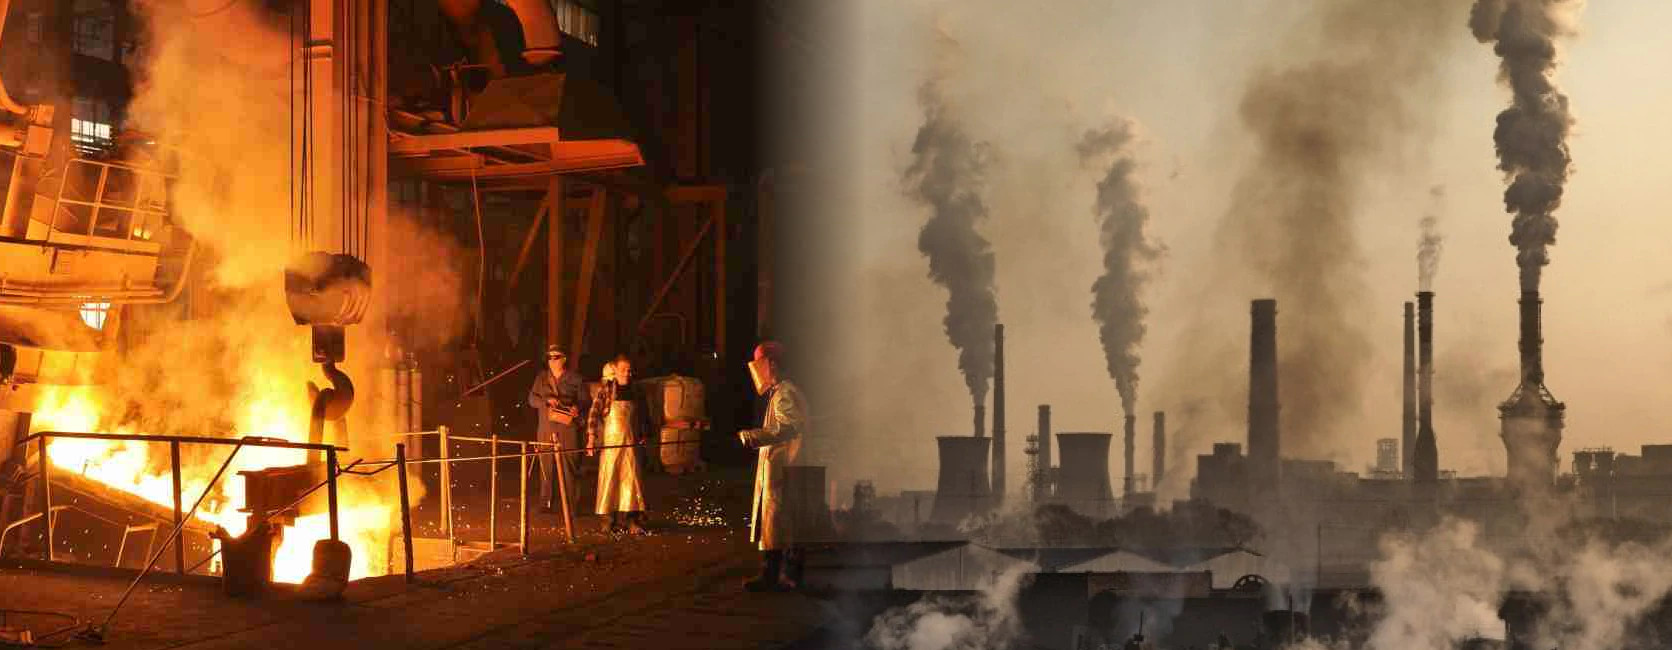 Scenes of the steel industry.